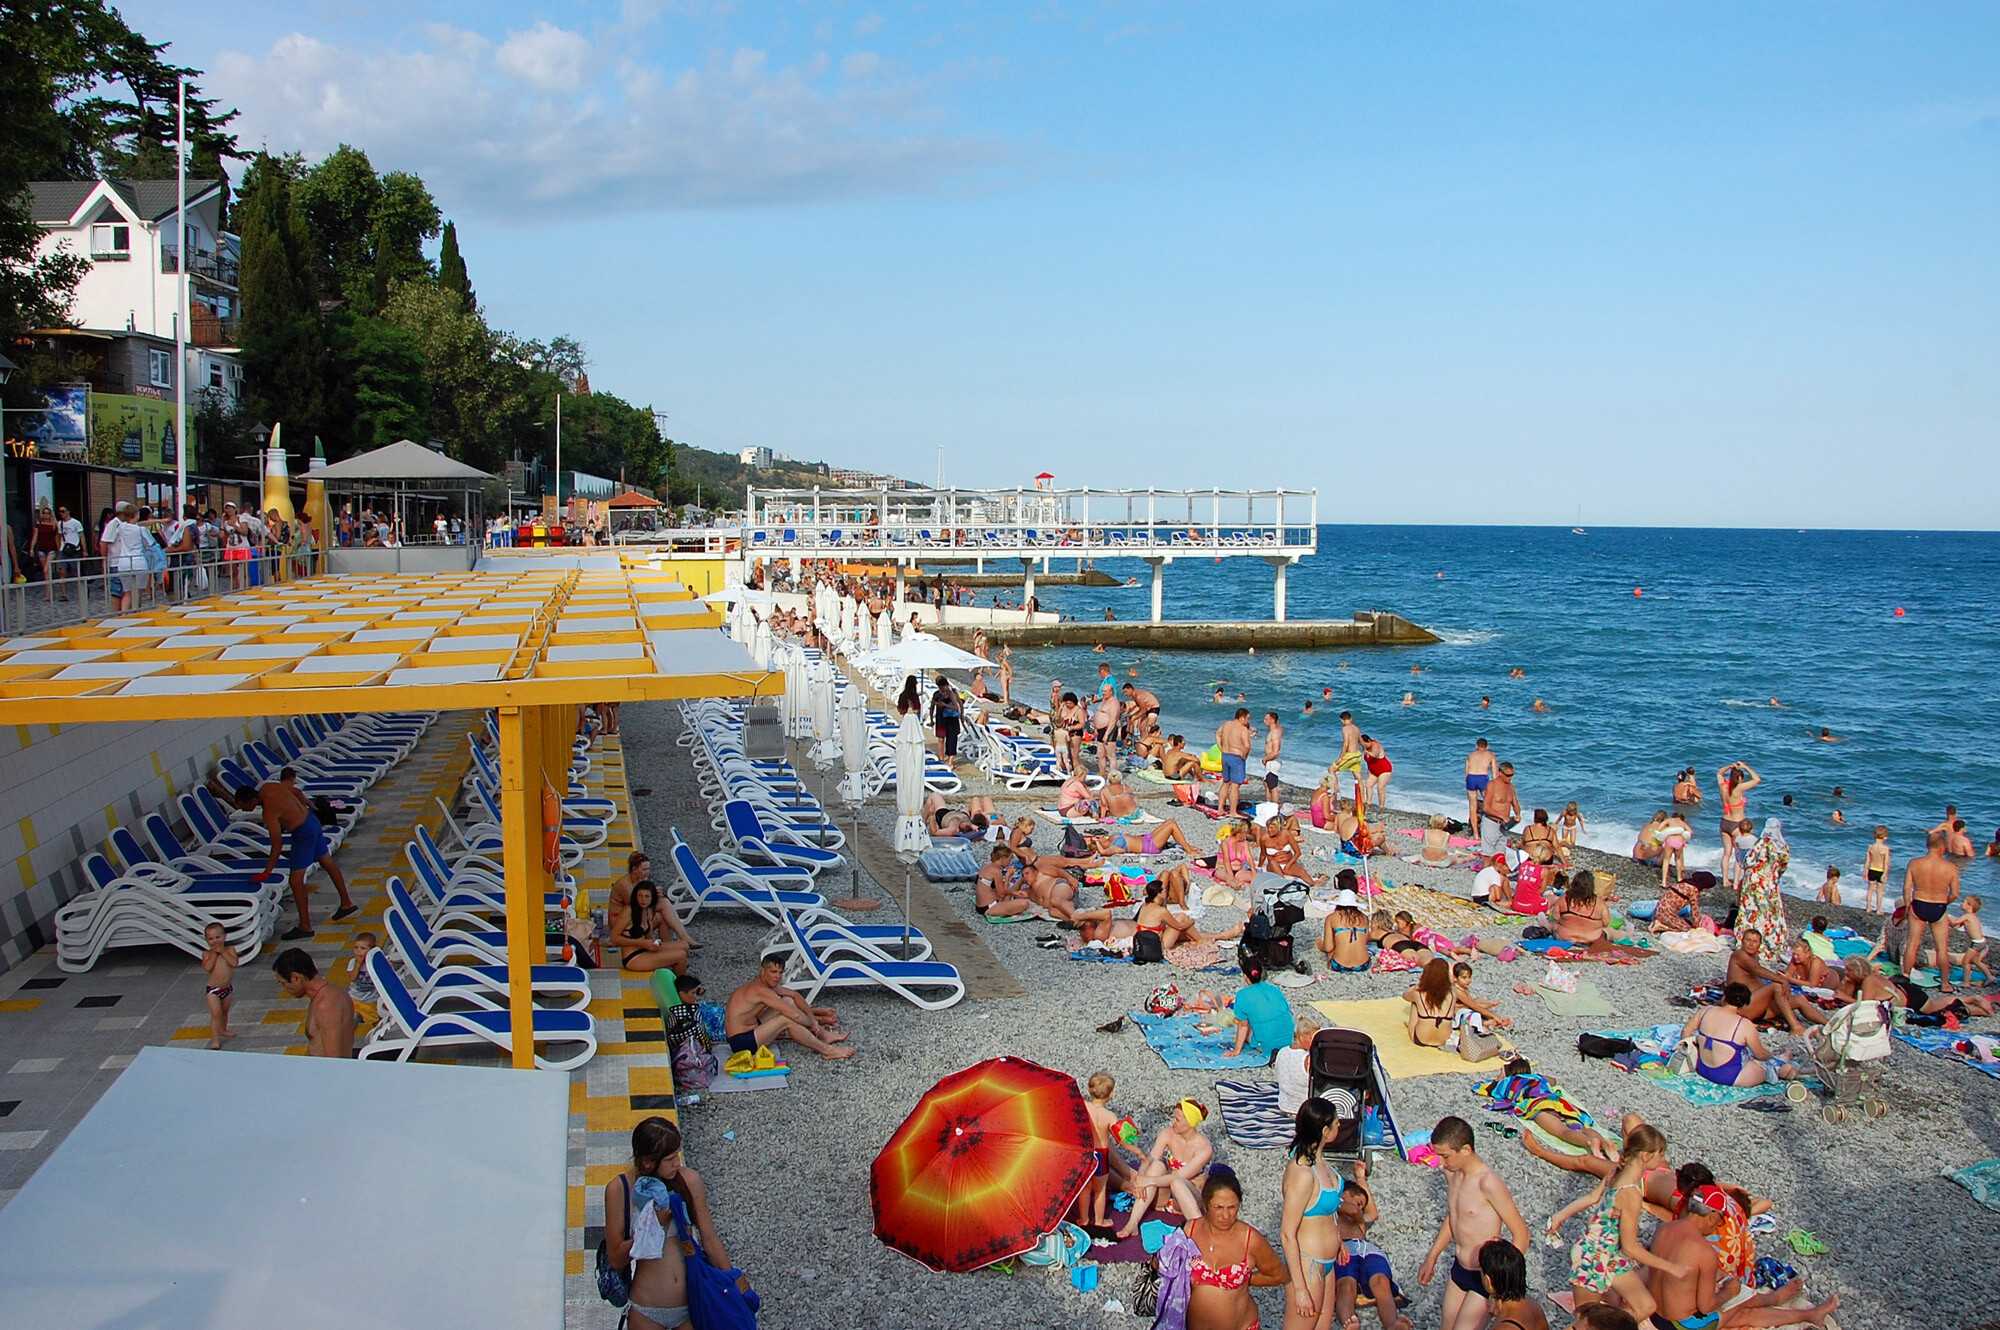 Лучшие пляжи севастополя, крым - фото 2022, обзоры с описанием